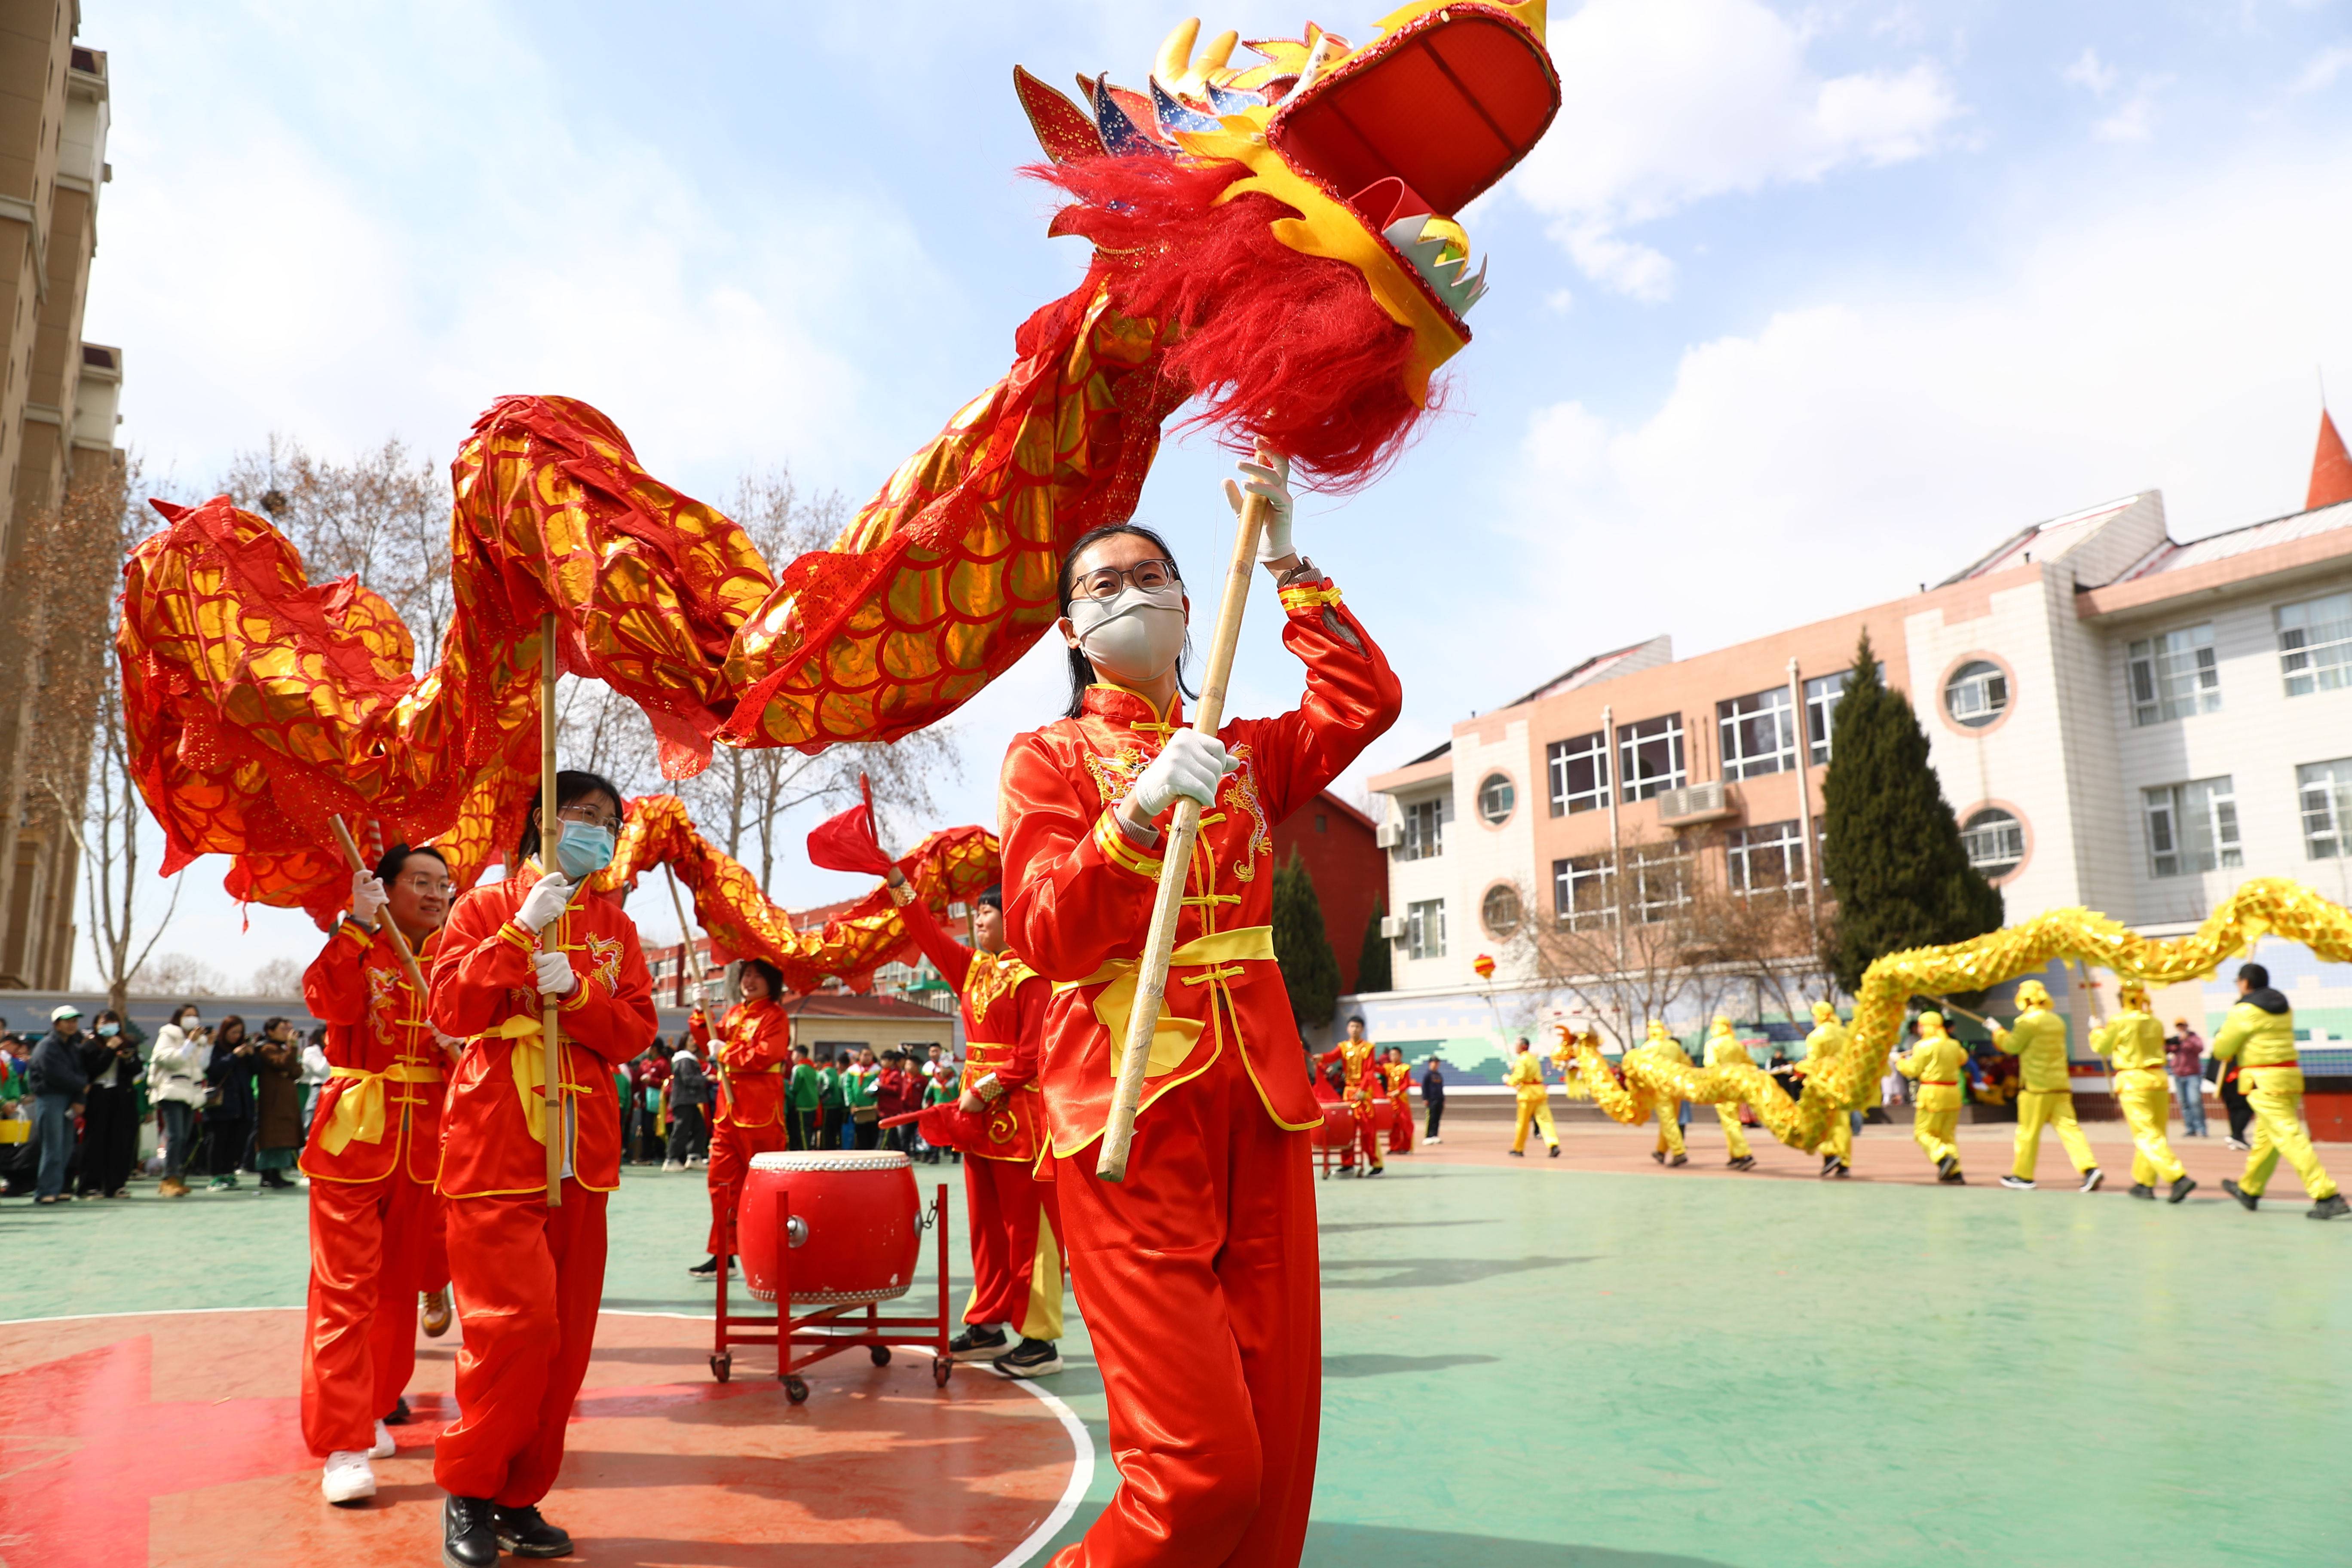 石家庄市红星小学举办第十二届传统文化活动